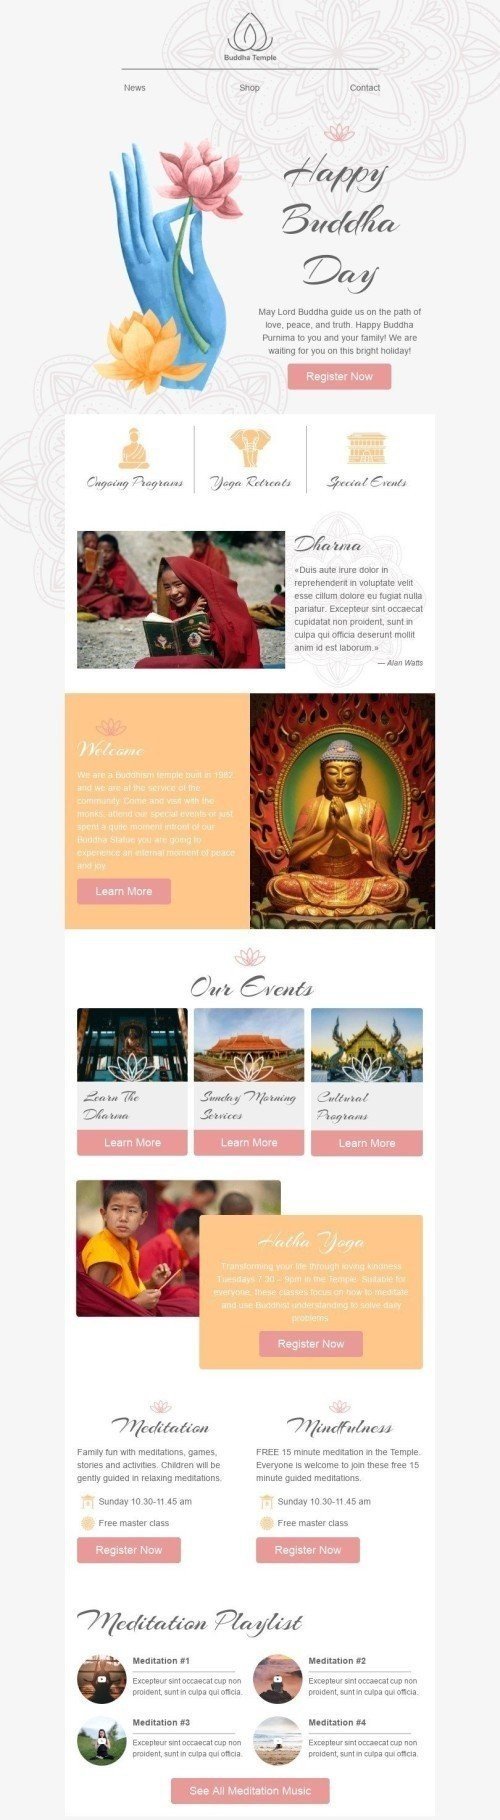 Шаблон письма к празднику День будды «Медитация» для индустрии «Дизайн шаблонов для некоммерческих email-кампаний» мобильный вид